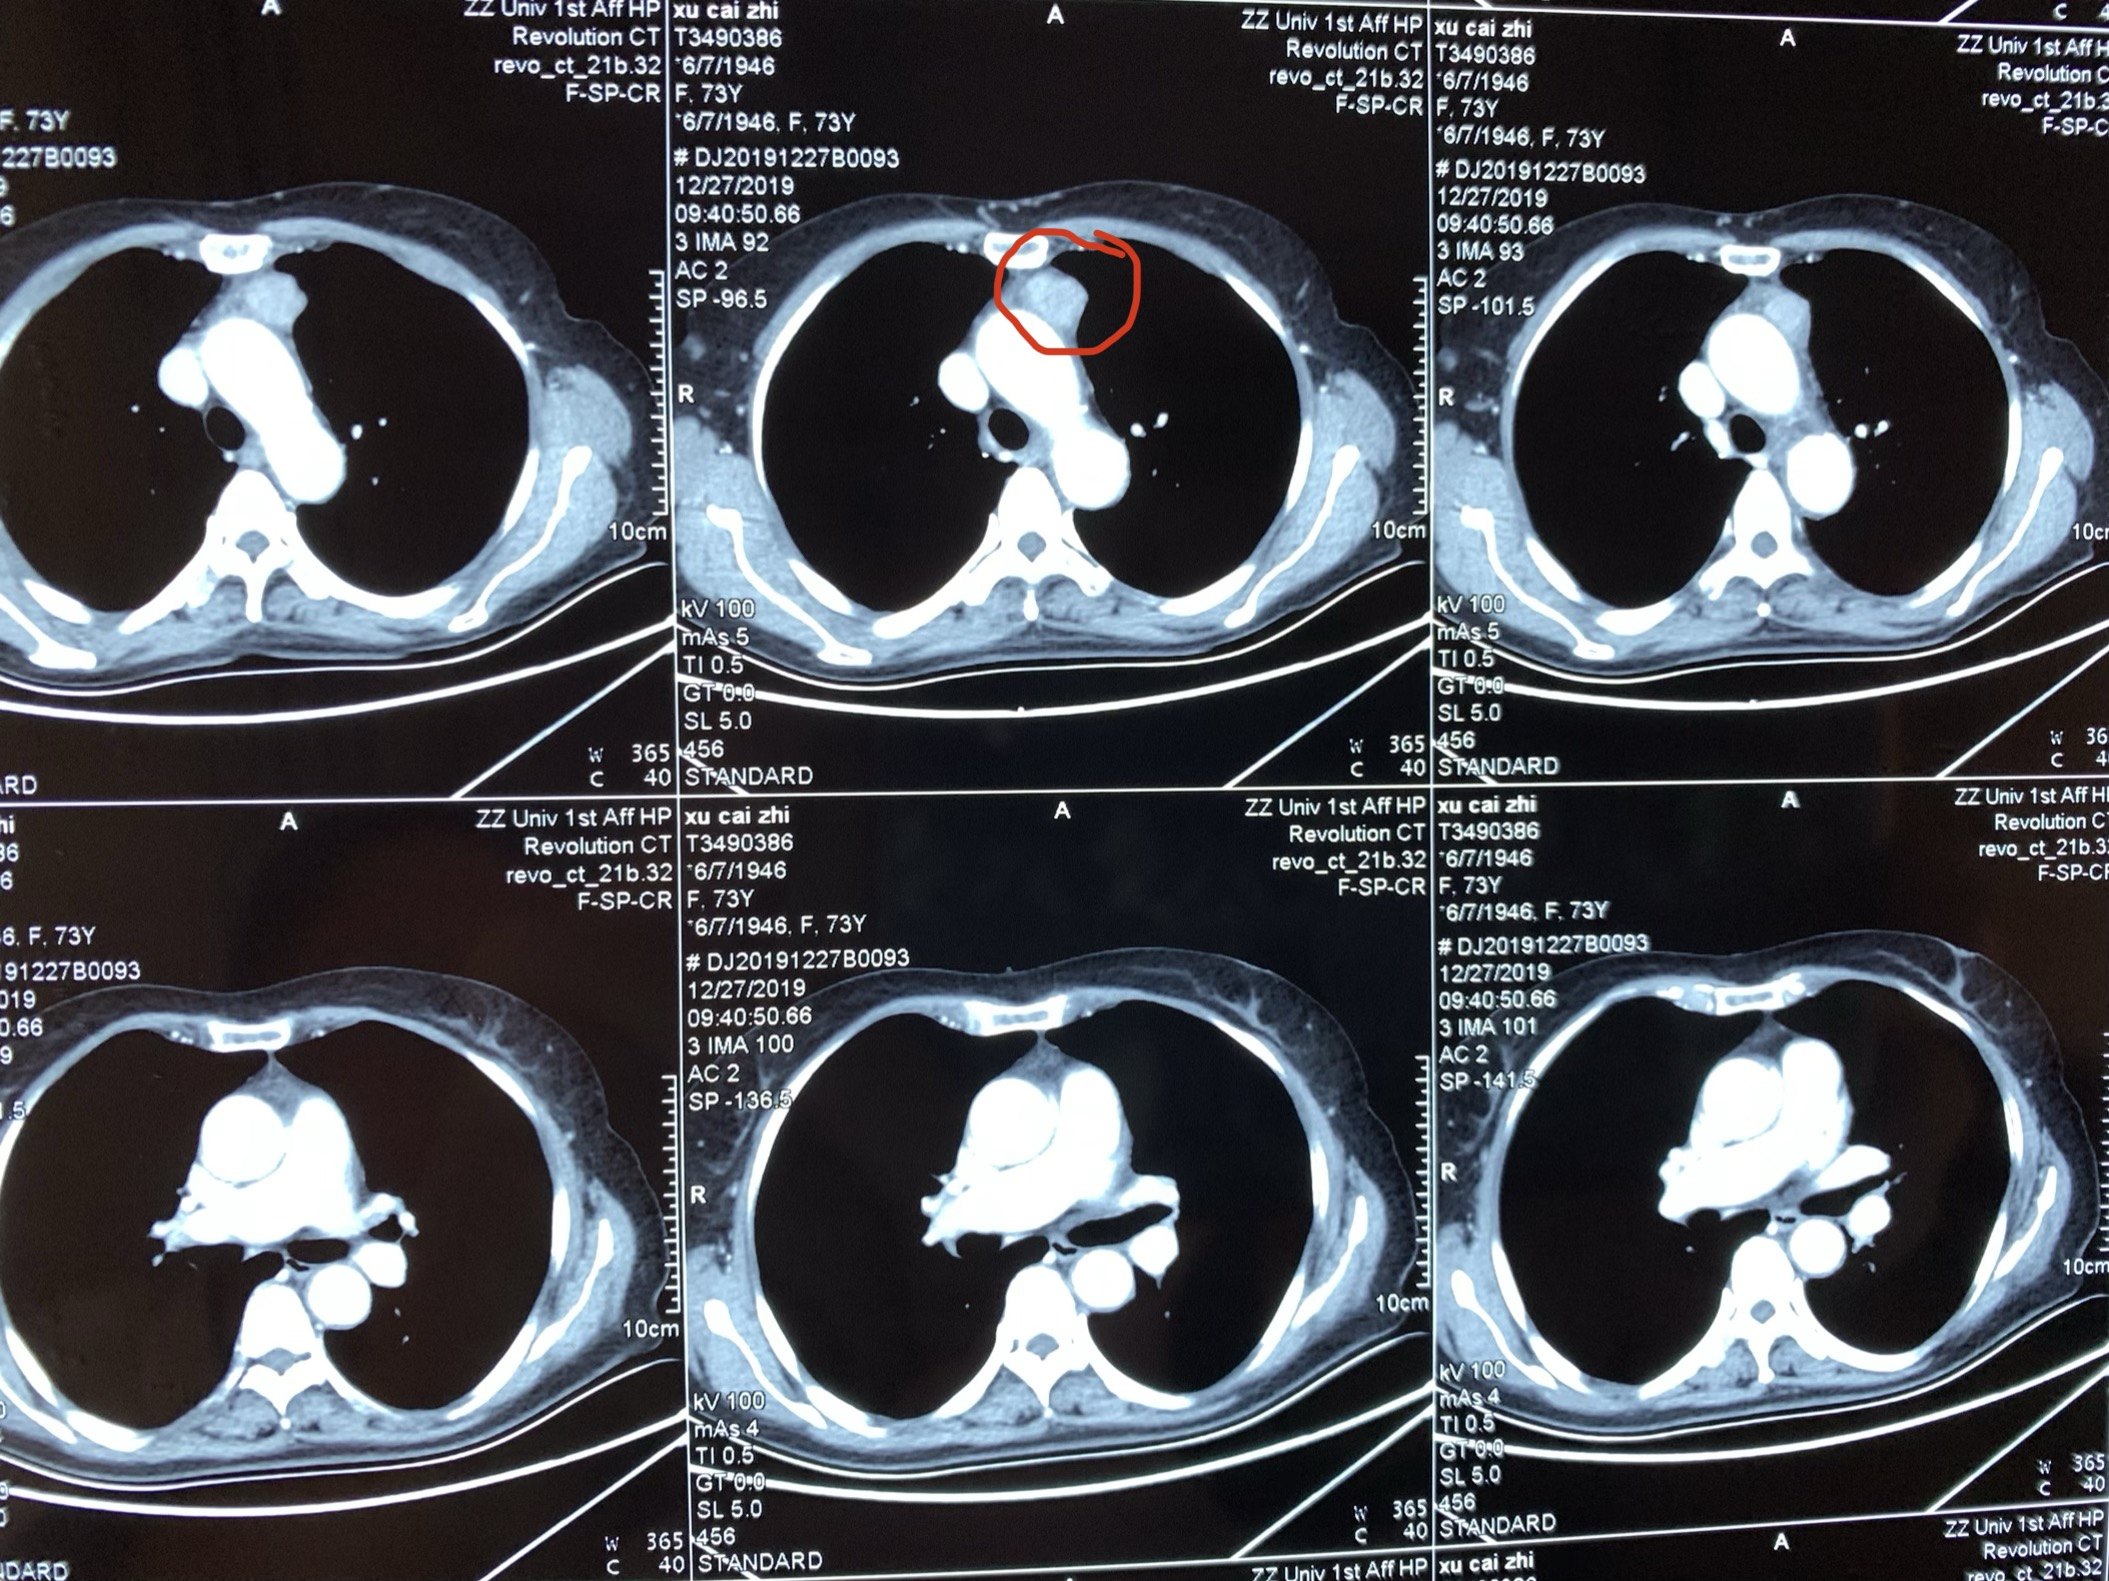 胸腺瘤症状图片